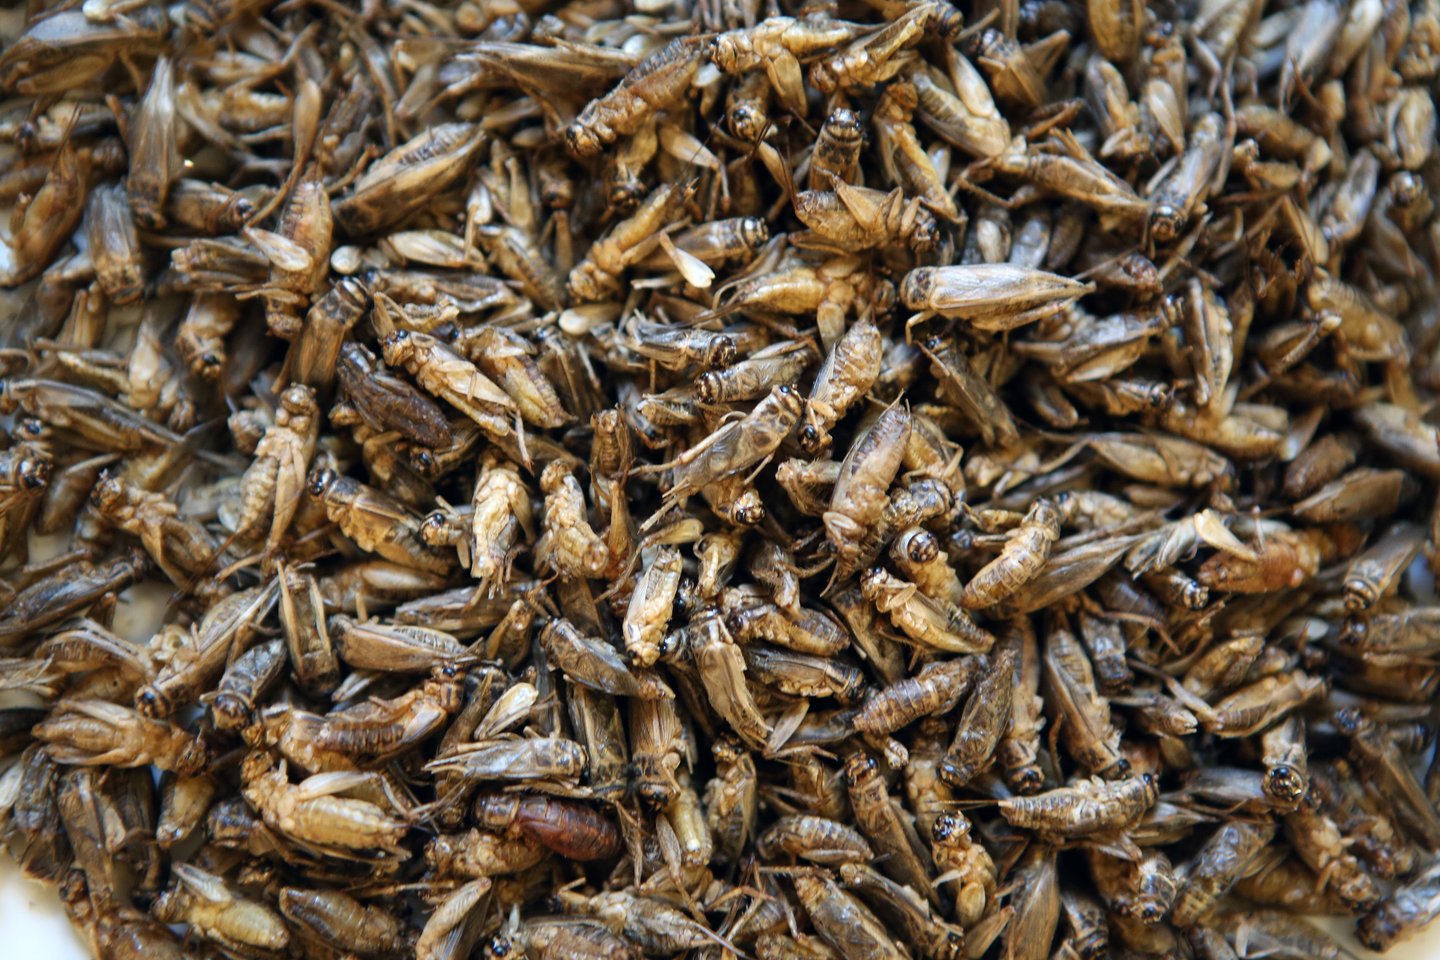 Europos Komisija šiuo metu nagrinėja dar aštuonias paraiškas dėl leidimo naudoti vabzdžius maistui.<br>M.Patašiaus nuotr.